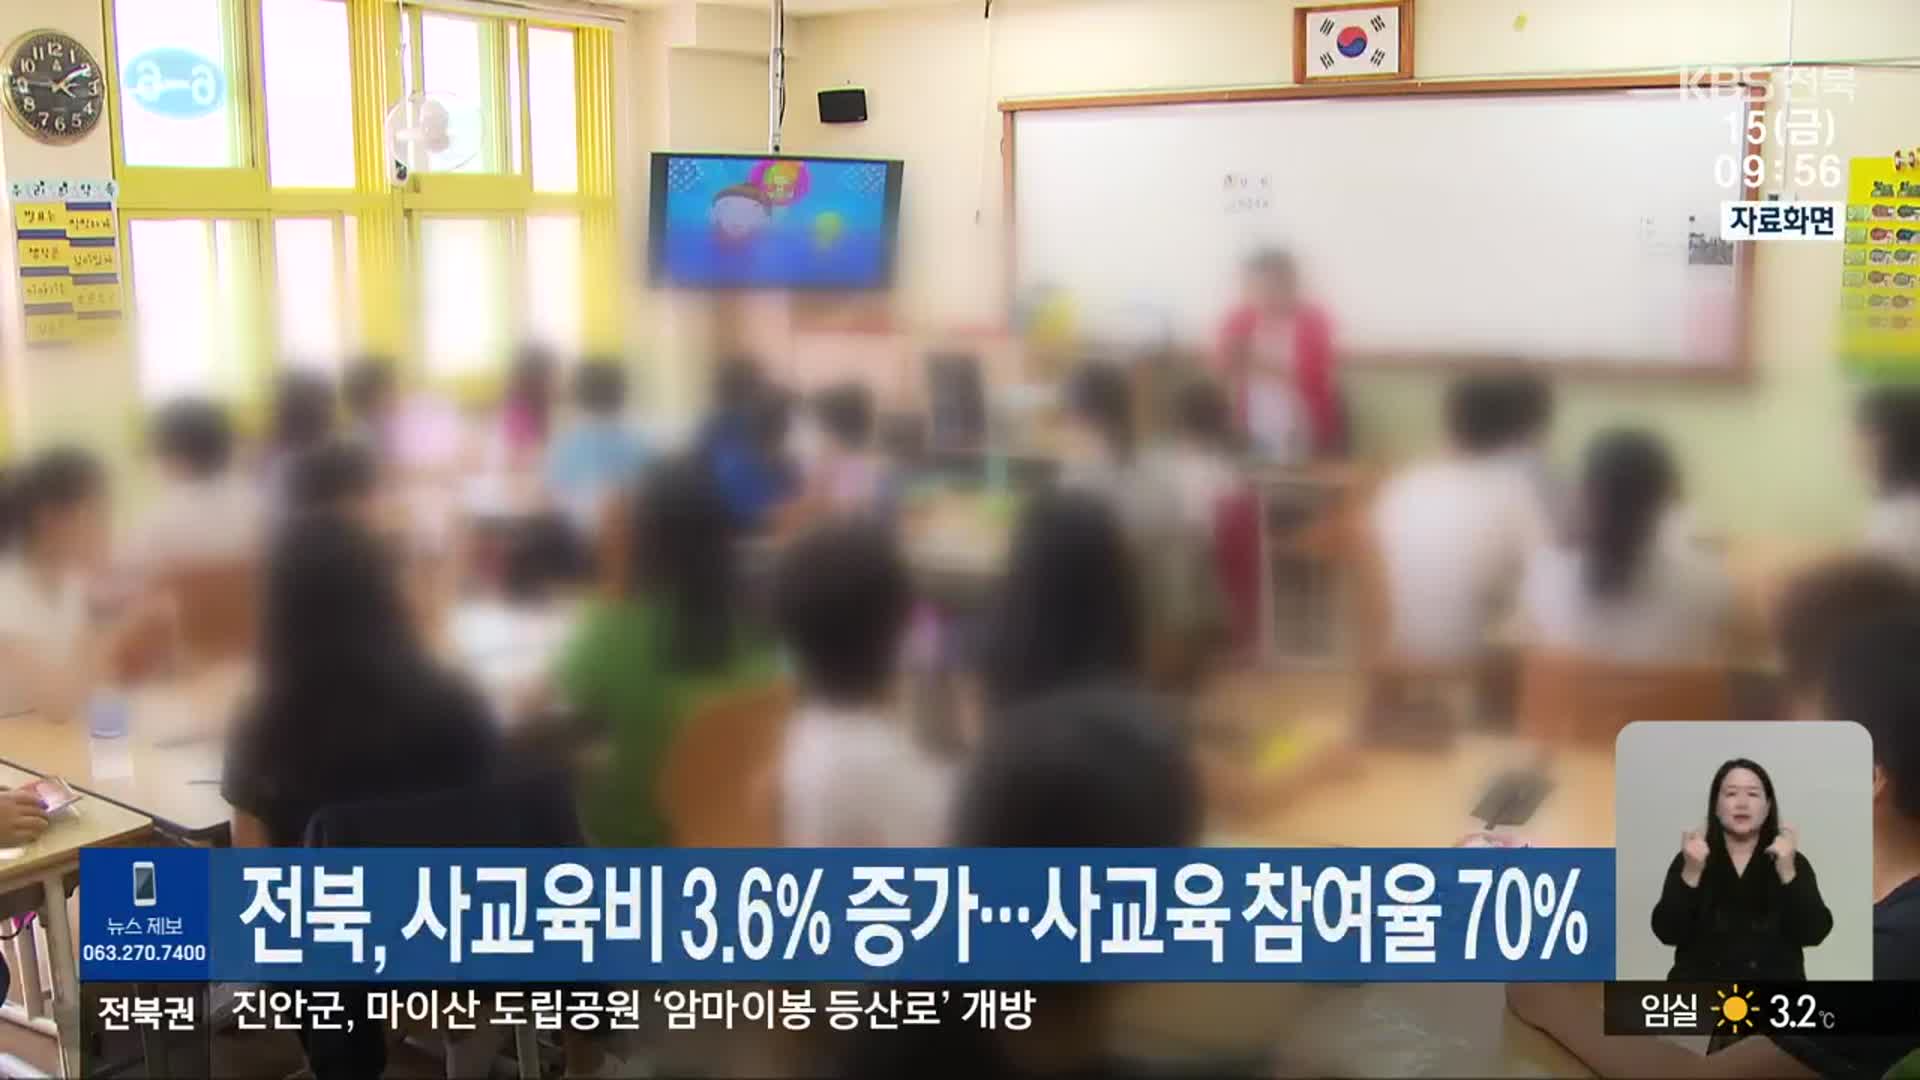 전북, 사교육비 3.6% 증가…사교육 참여율 70%